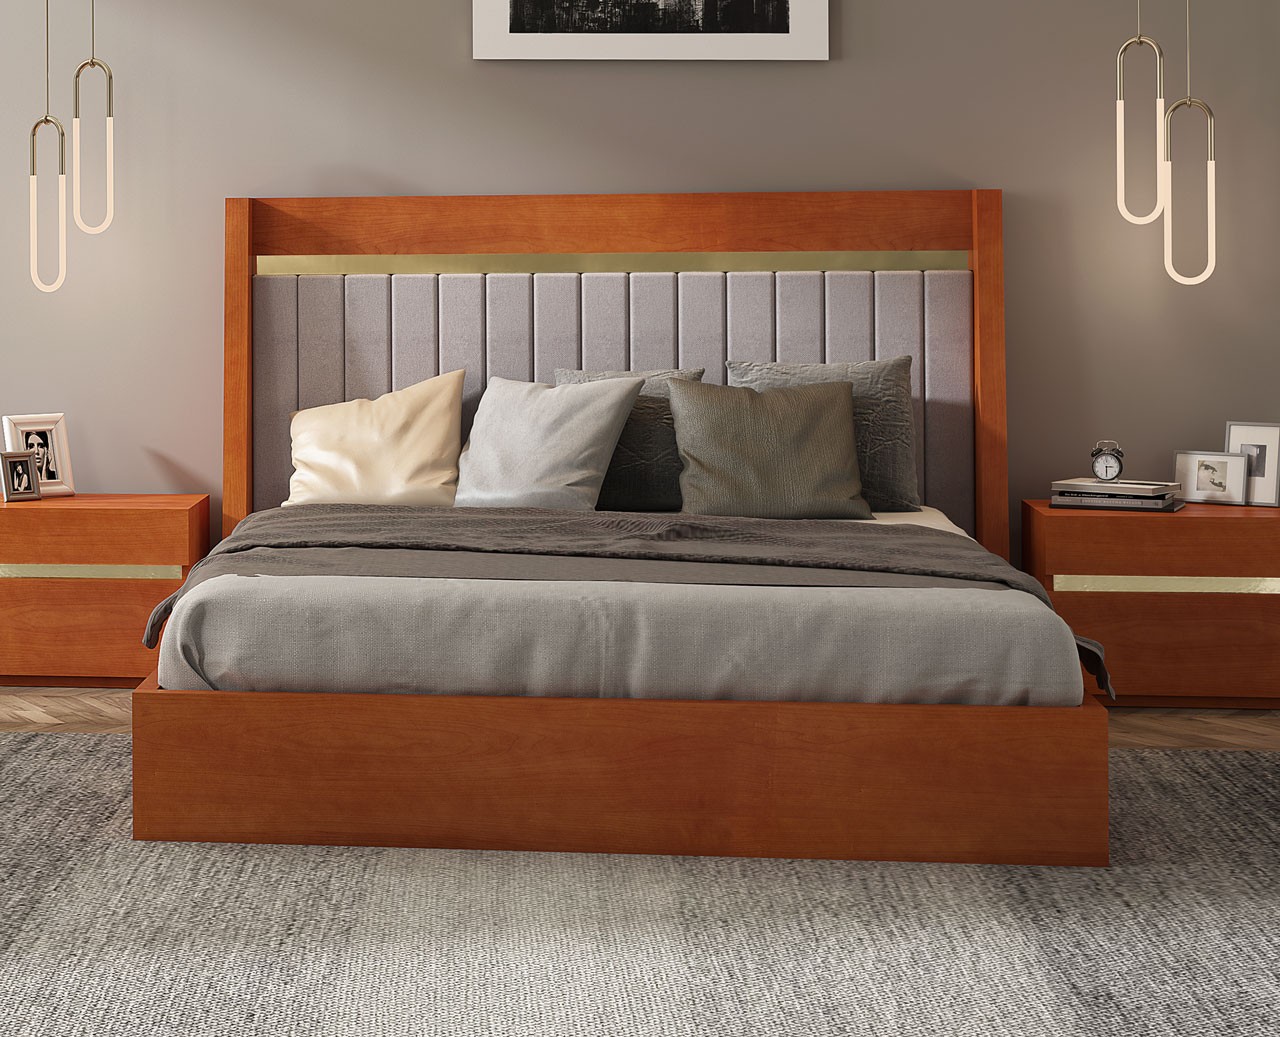 Uma cama de casal ajuda com a decoração de móveis modernos e minimalistas, crie um espaço perfeito para si